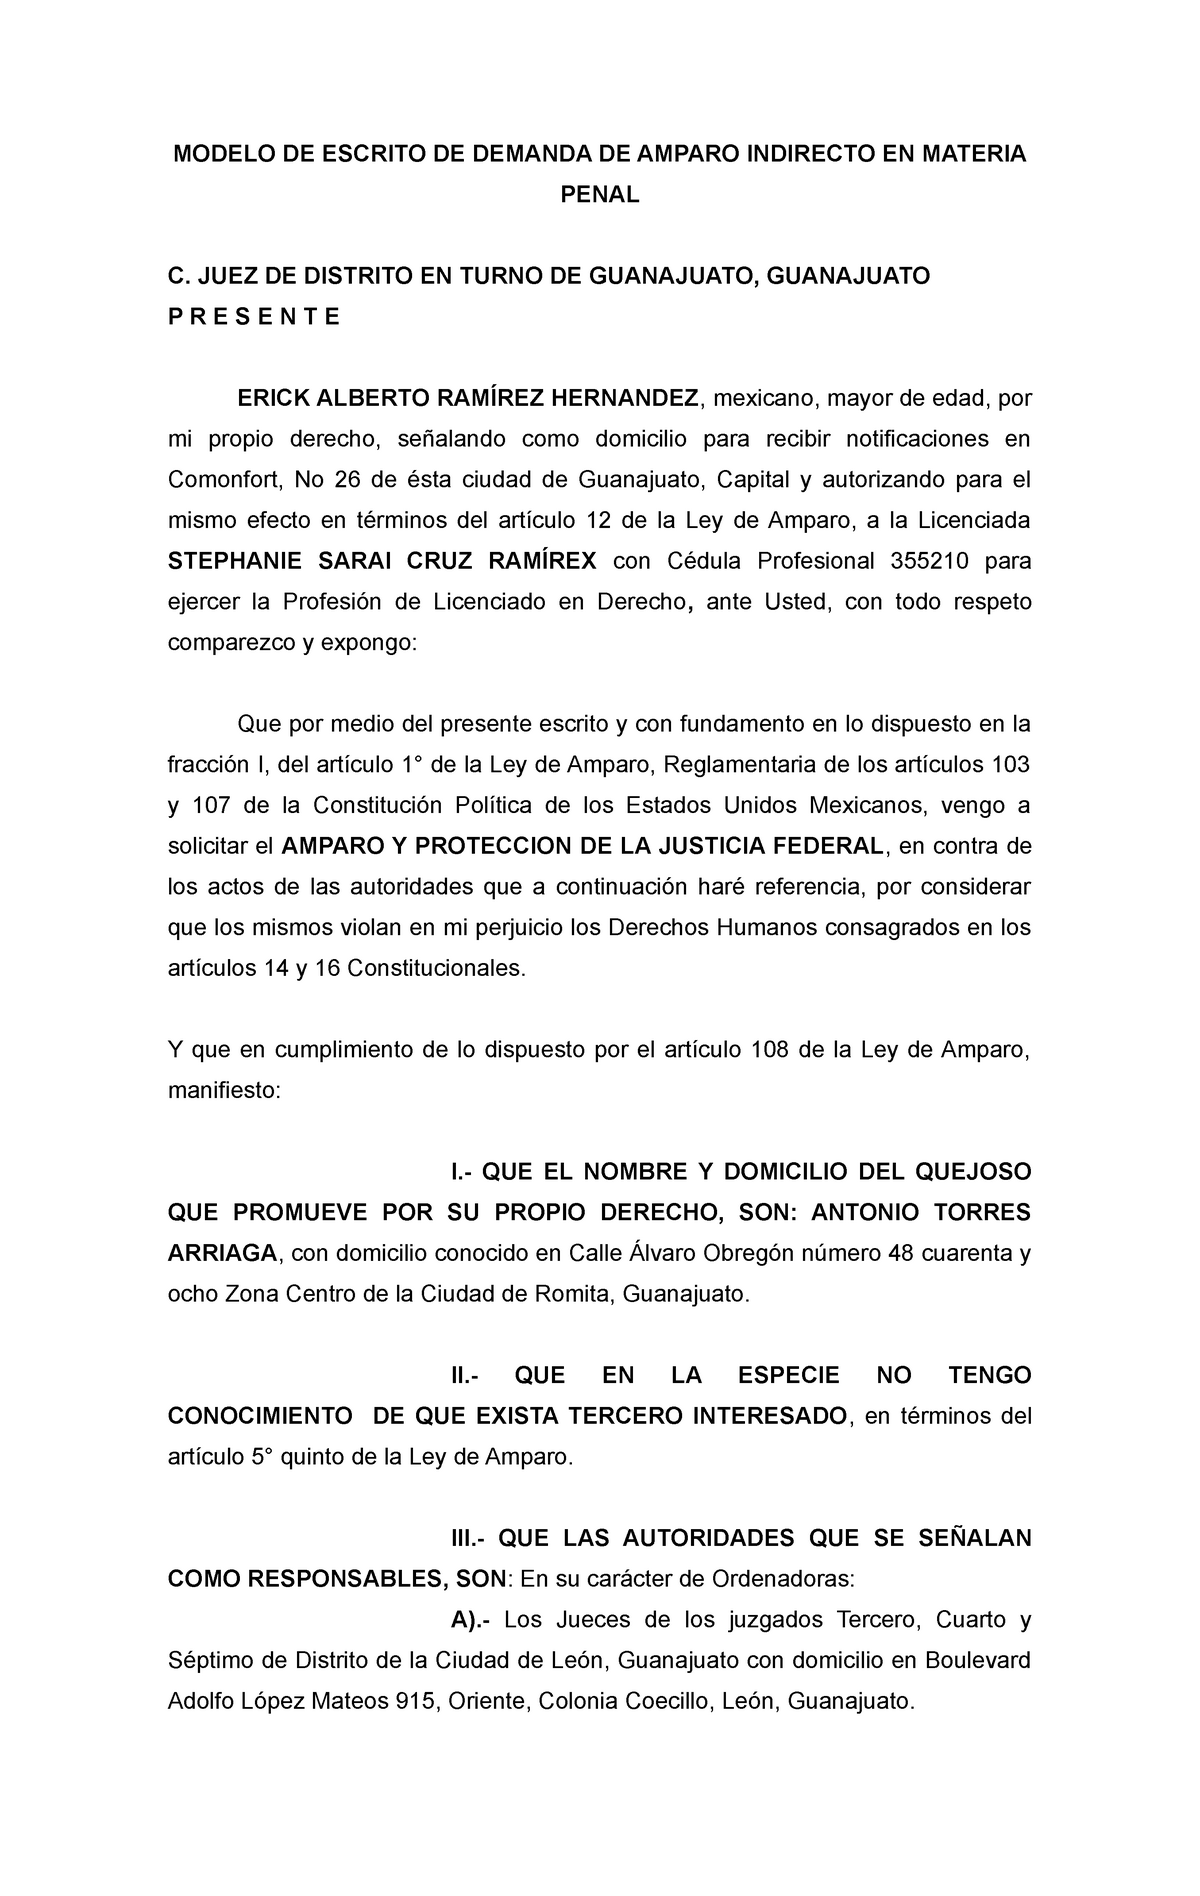 03 Demanda DE AMPARO INDIRECTO EN MATERIA Penal - MODELO DE ESCRITO DE  DEMANDA DE AMPARO INDIRECTO - Studocu